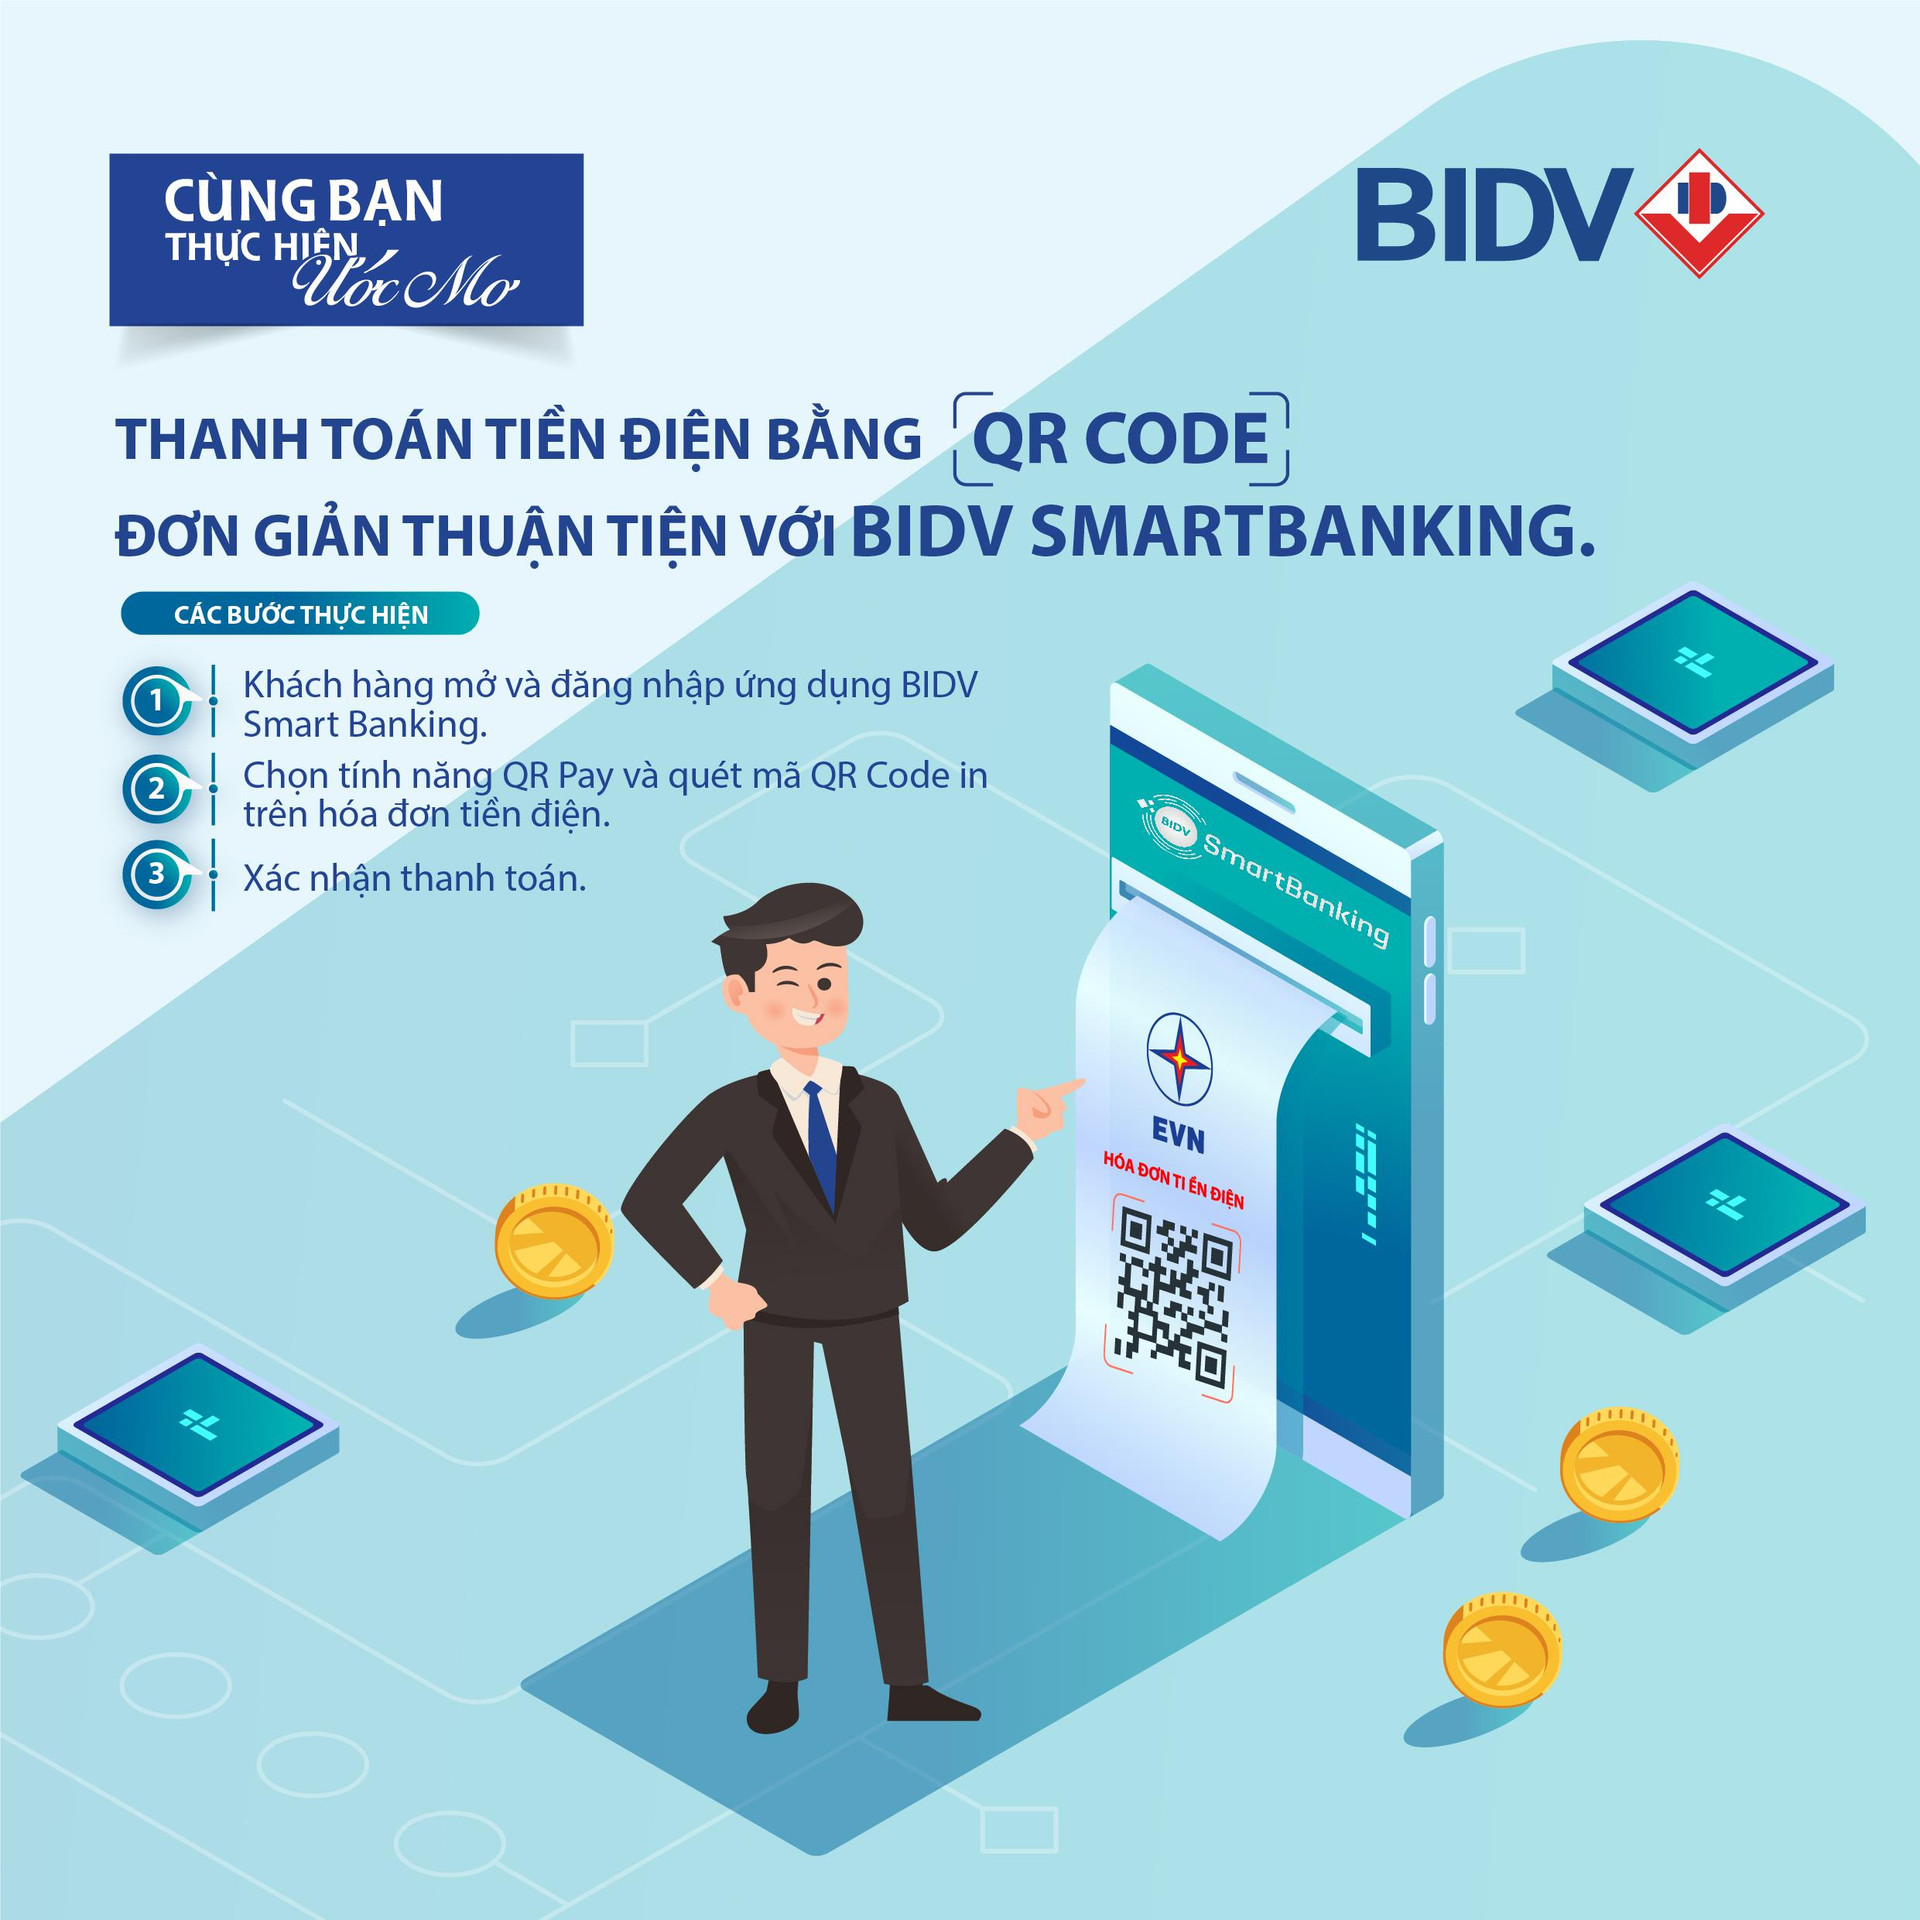 Thanh toán tiền điện bằng QR code - Đơn giản thuận tiện với BIDV Smartbanking - 1